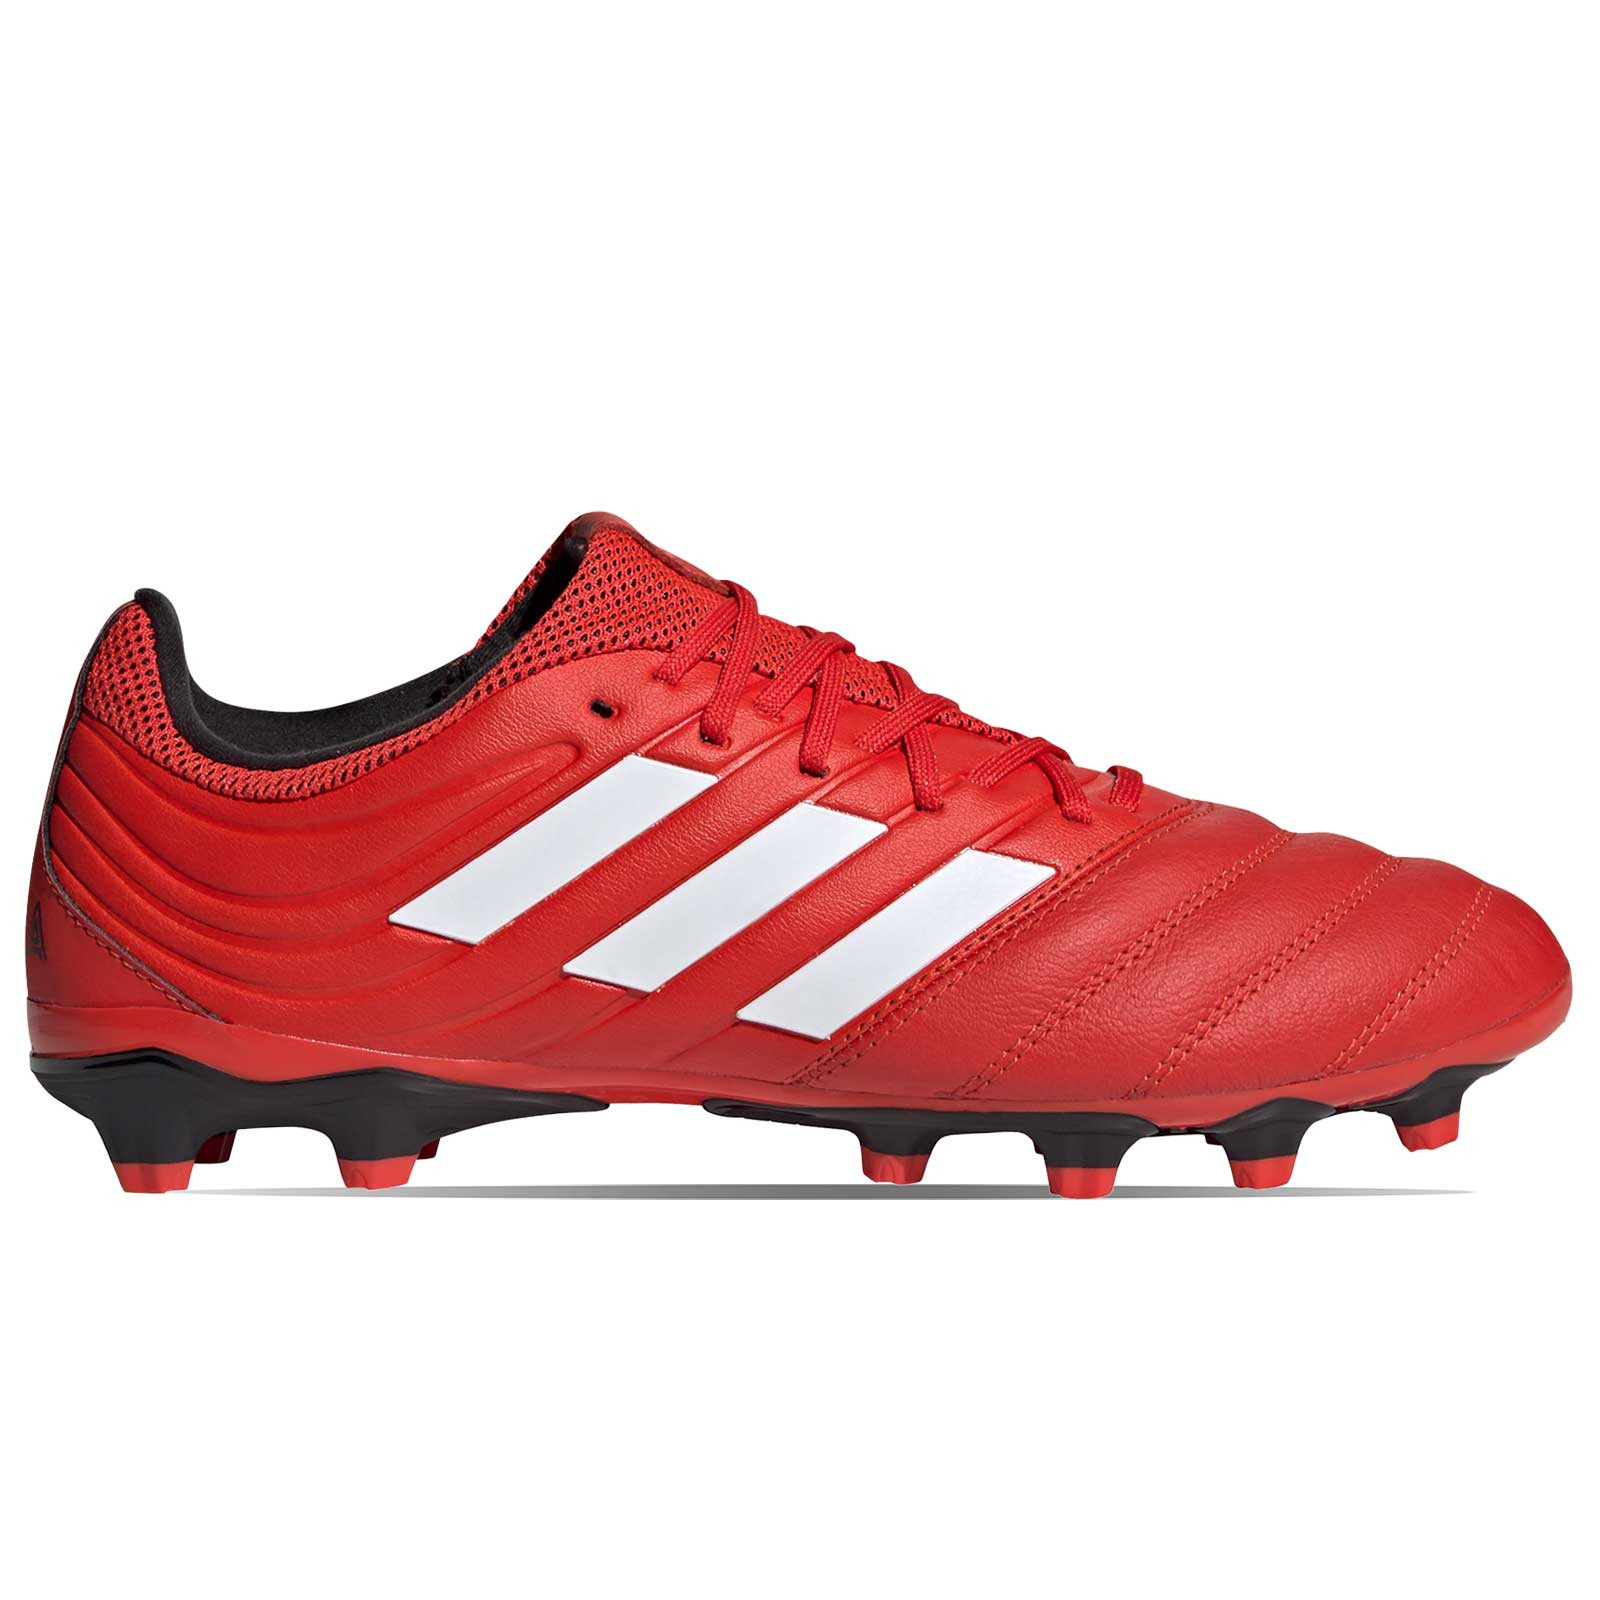 botas de futbol adidas rojas